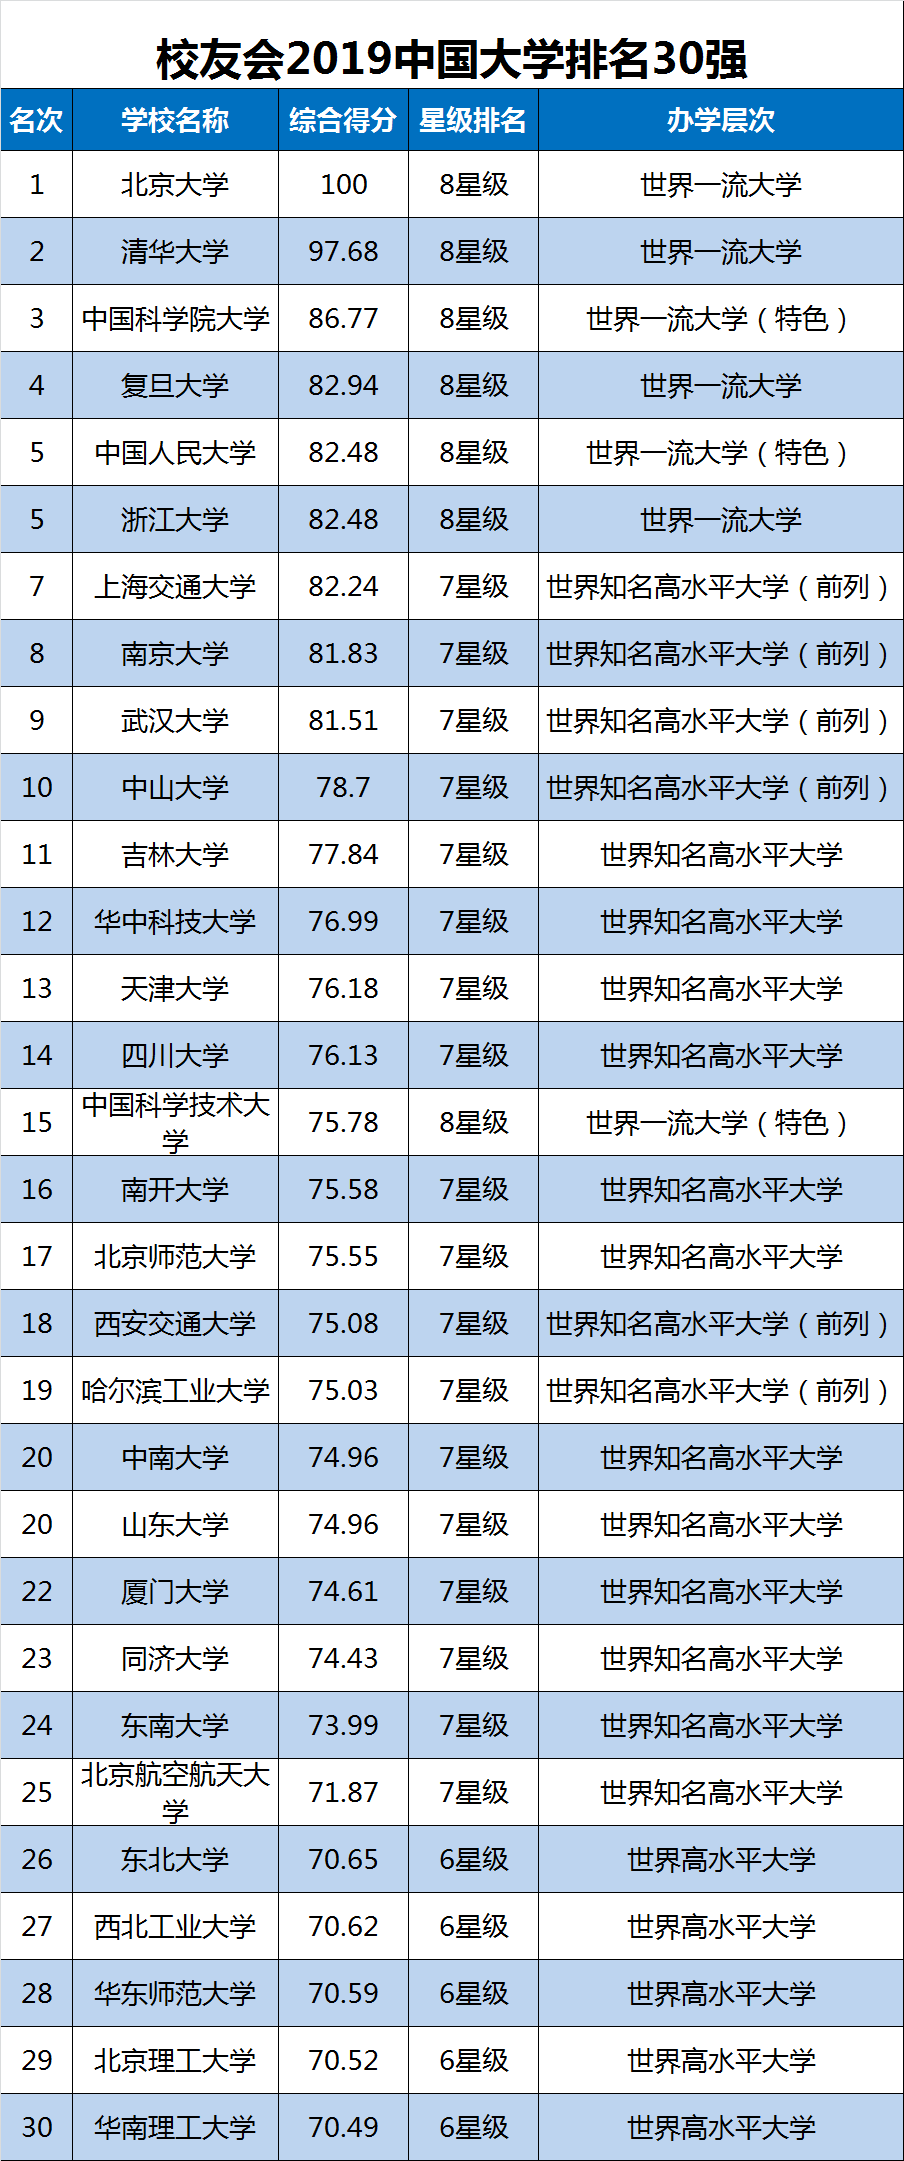 2019音乐类大学排行榜_2019年世界十大权威大学排名报告发布,中国891所高